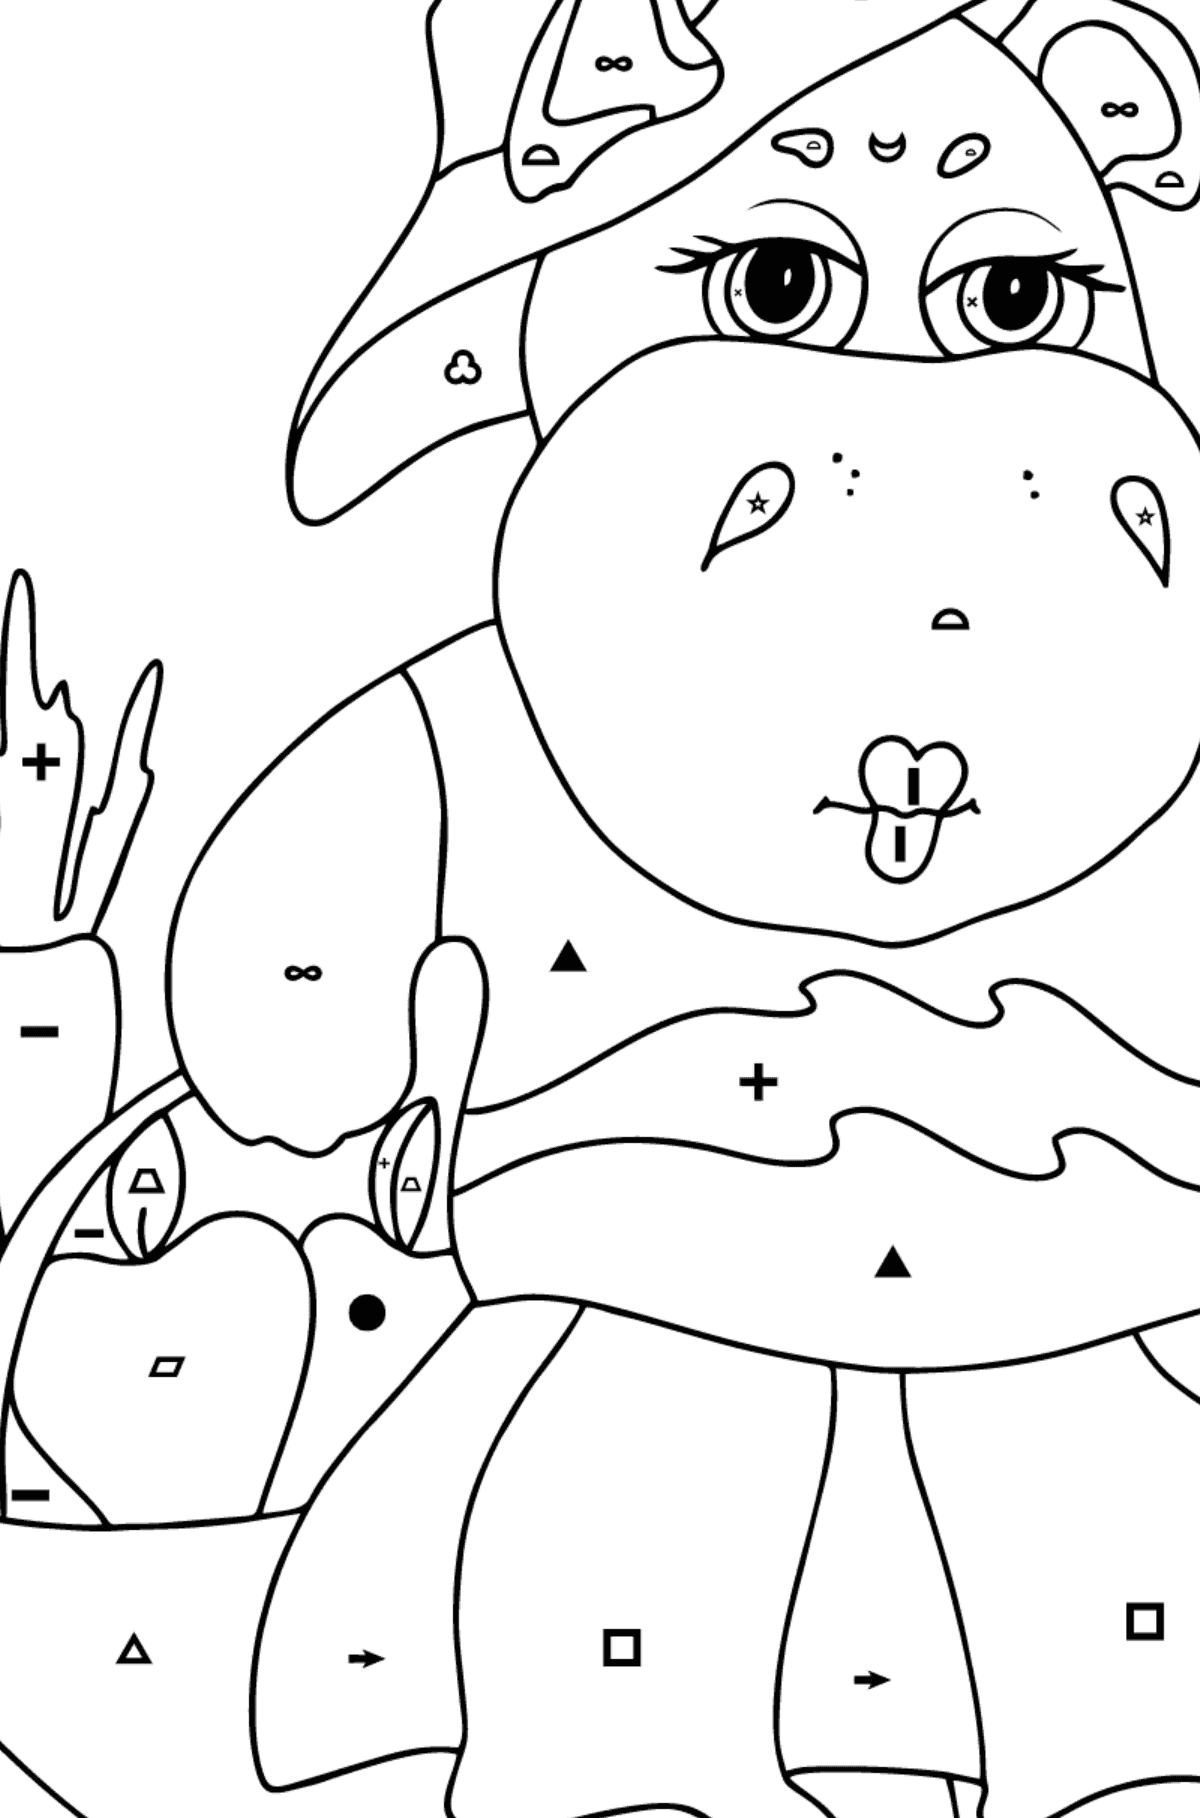 Kolorowanka Chwalebny Hipopotam - Kolorowanie według symboli i figur geometrycznych dla dzieci